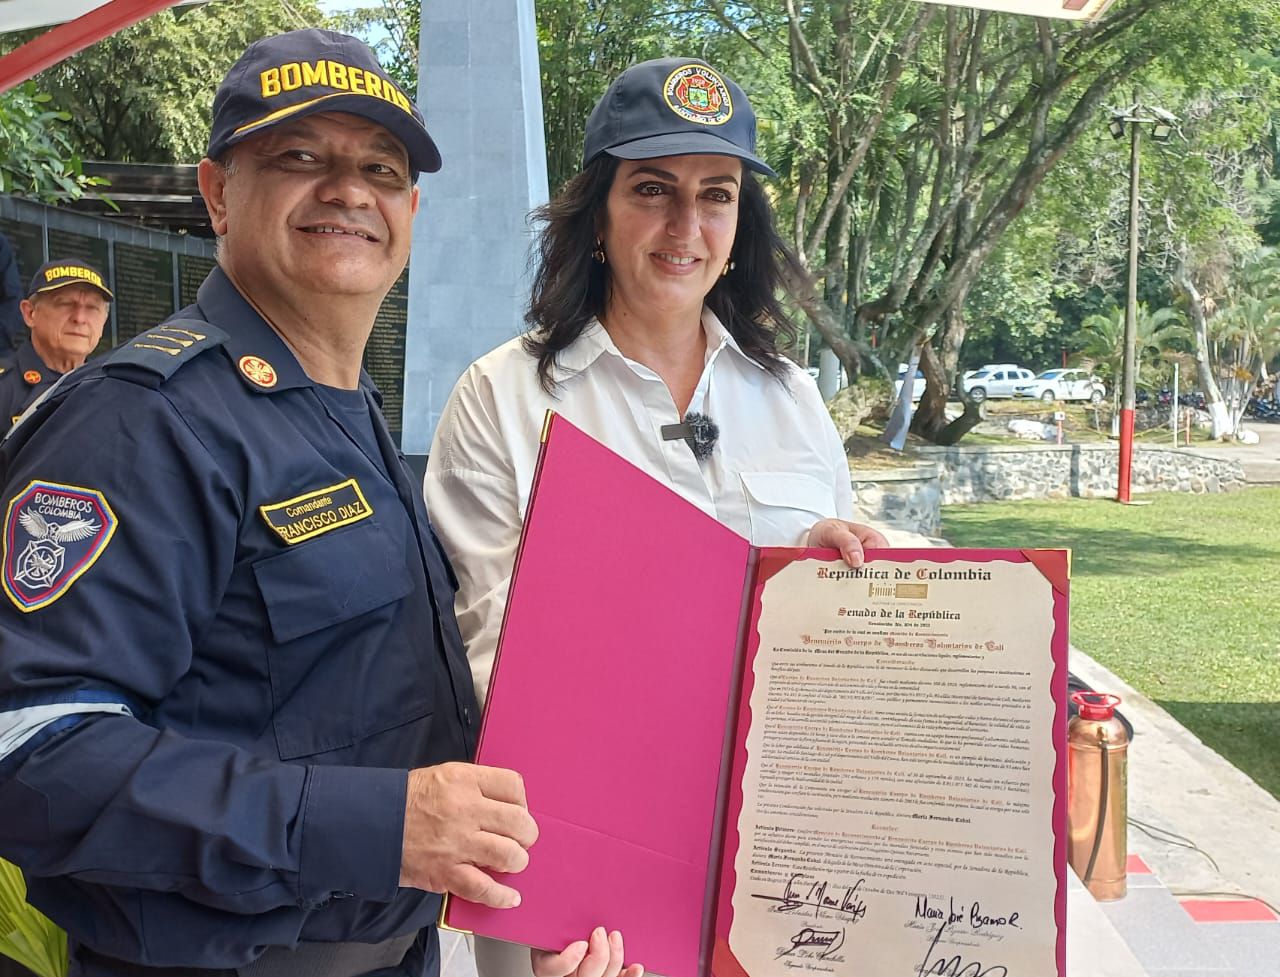 La Senadora María Fernanda Cabal hace entrega del reconocimiento al Cuerpo de Bomberos Voluntarios de Cali.